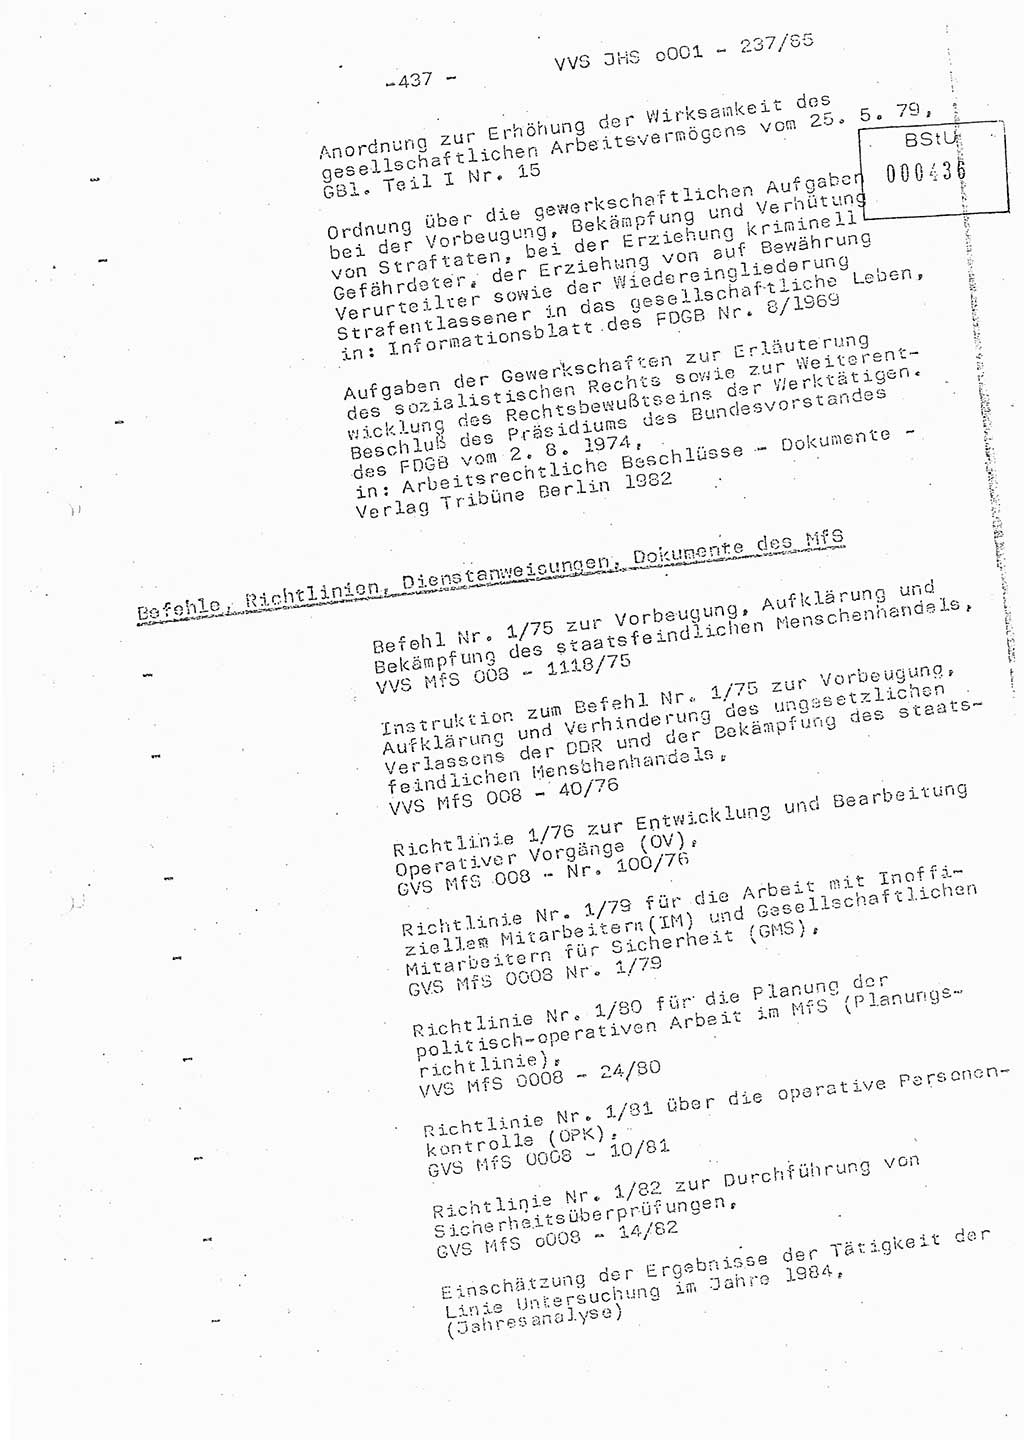 Dissertation Oberstleutnant Peter Jakulski (JHS), Oberstleutnat Christian Rudolph (HA Ⅸ), Major Horst Böttger (ZMD), Major Wolfgang Grüneberg (JHS), Major Albert Meutsch (JHS), Ministerium für Staatssicherheit (MfS) [Deutsche Demokratische Republik (DDR)], Juristische Hochschule (JHS), Vertrauliche Verschlußsache (VVS) o001-237/85, Potsdam 1985, Seite 437 (Diss. MfS DDR JHS VVS o001-237/85 1985, S. 437)